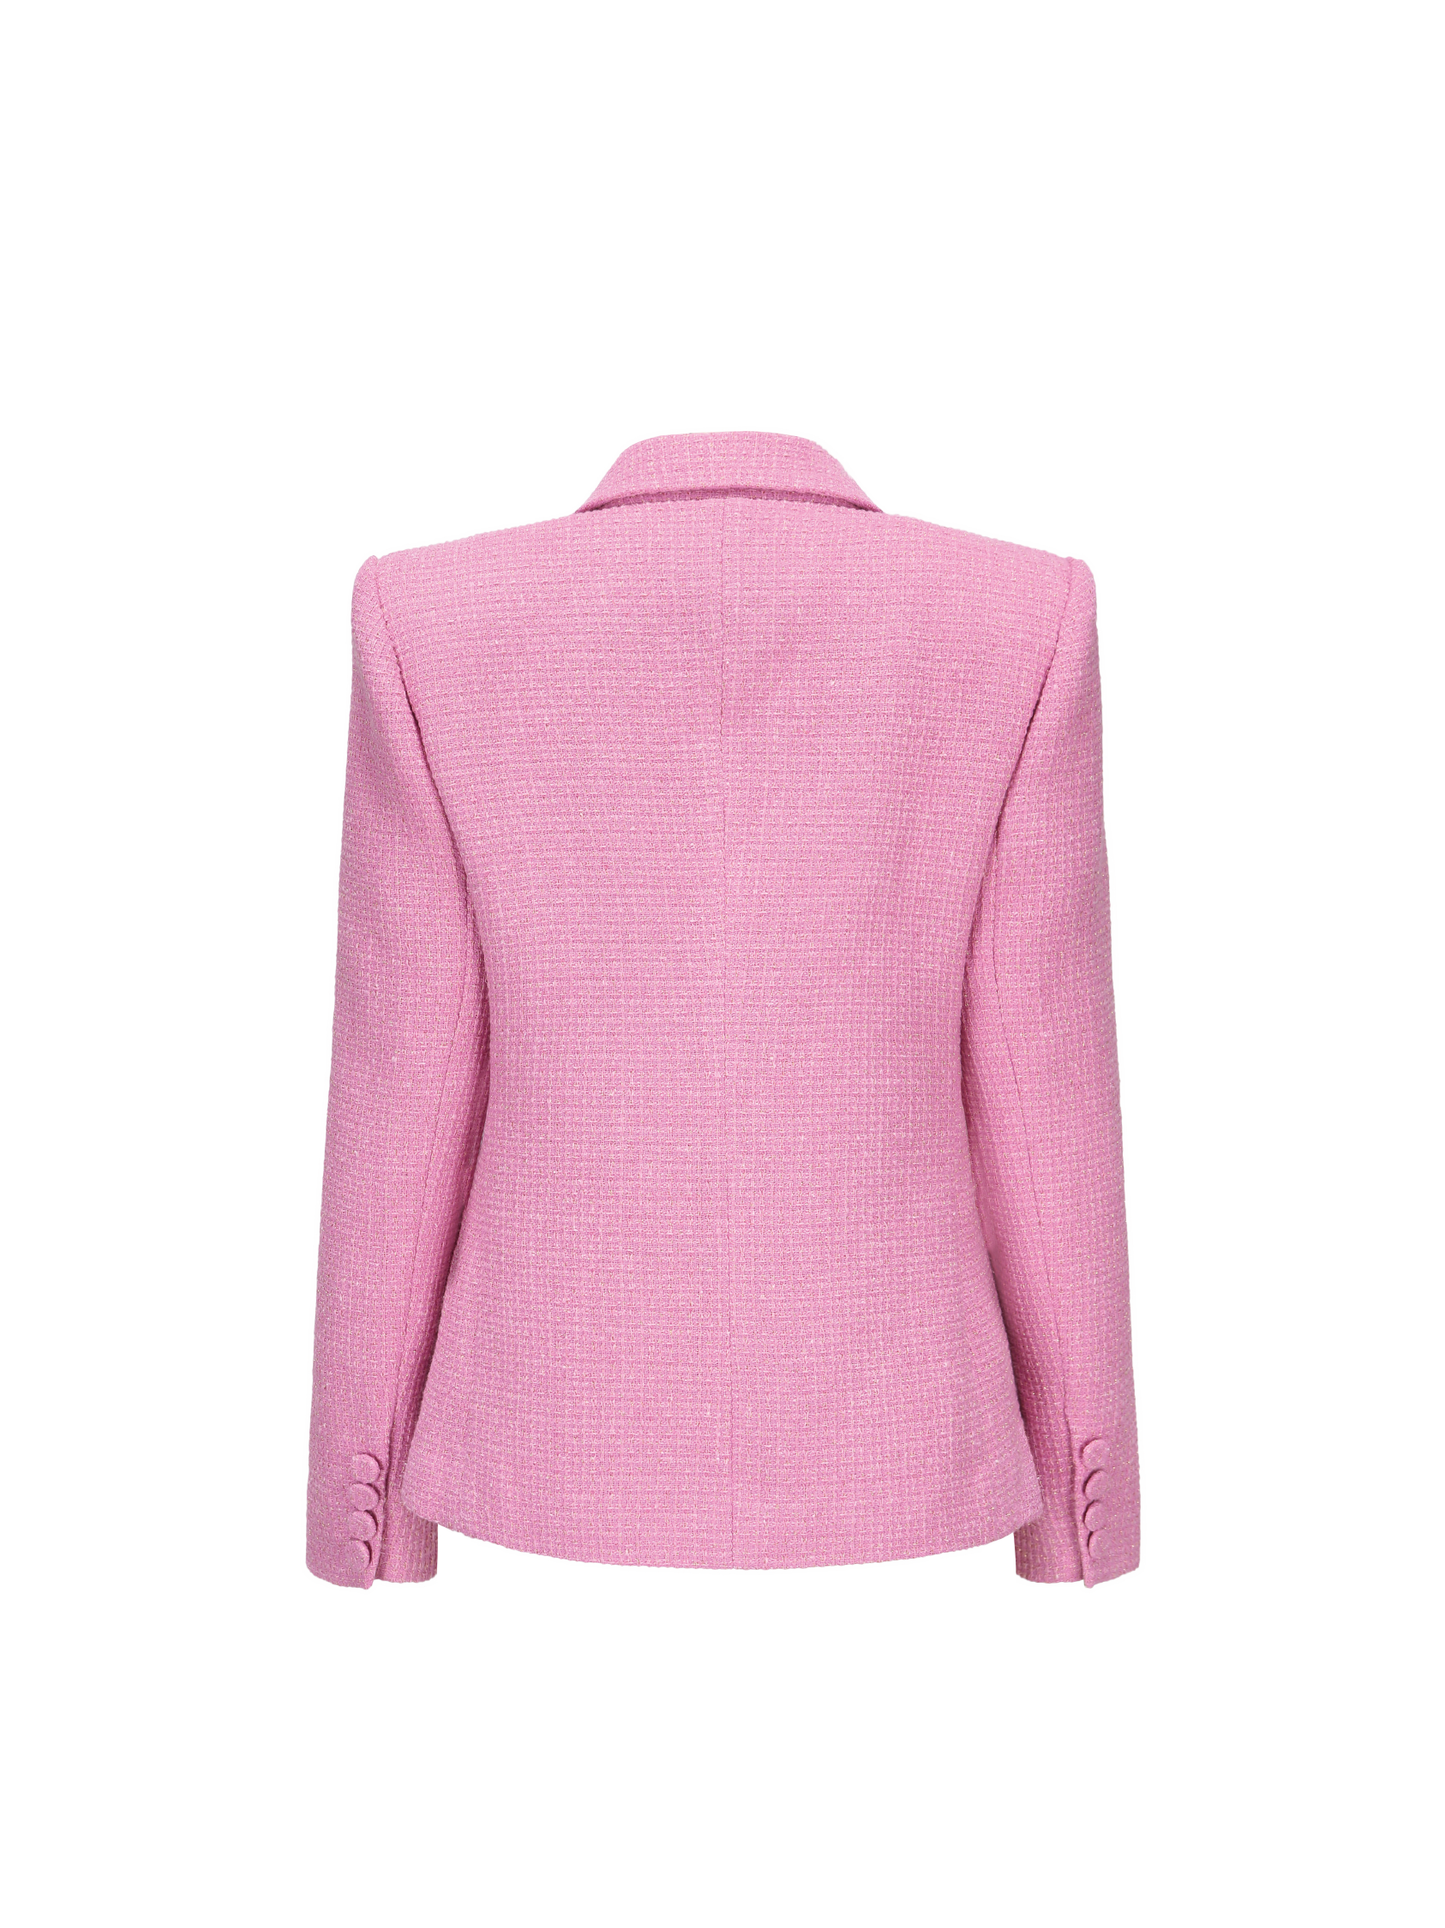 Maya Lapel Suit Jacket (Pink)